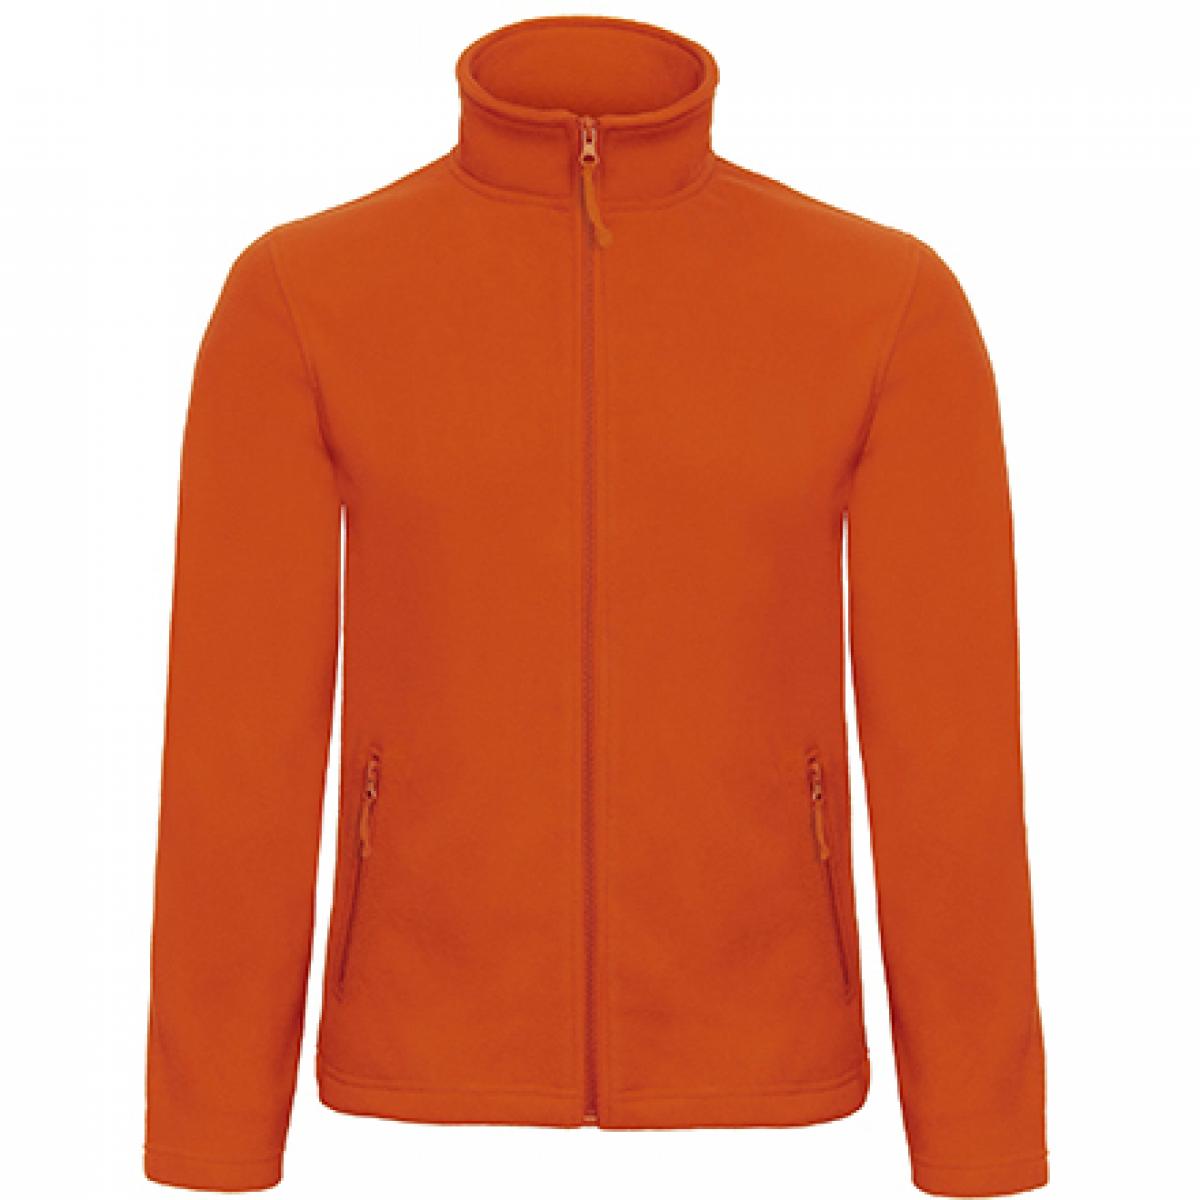 Hersteller: B&C Herstellernummer: FUI50 Artikelbezeichnung: Herren Microfleece Jacke Duo ID.501 Farbe: Pumpkin Orange